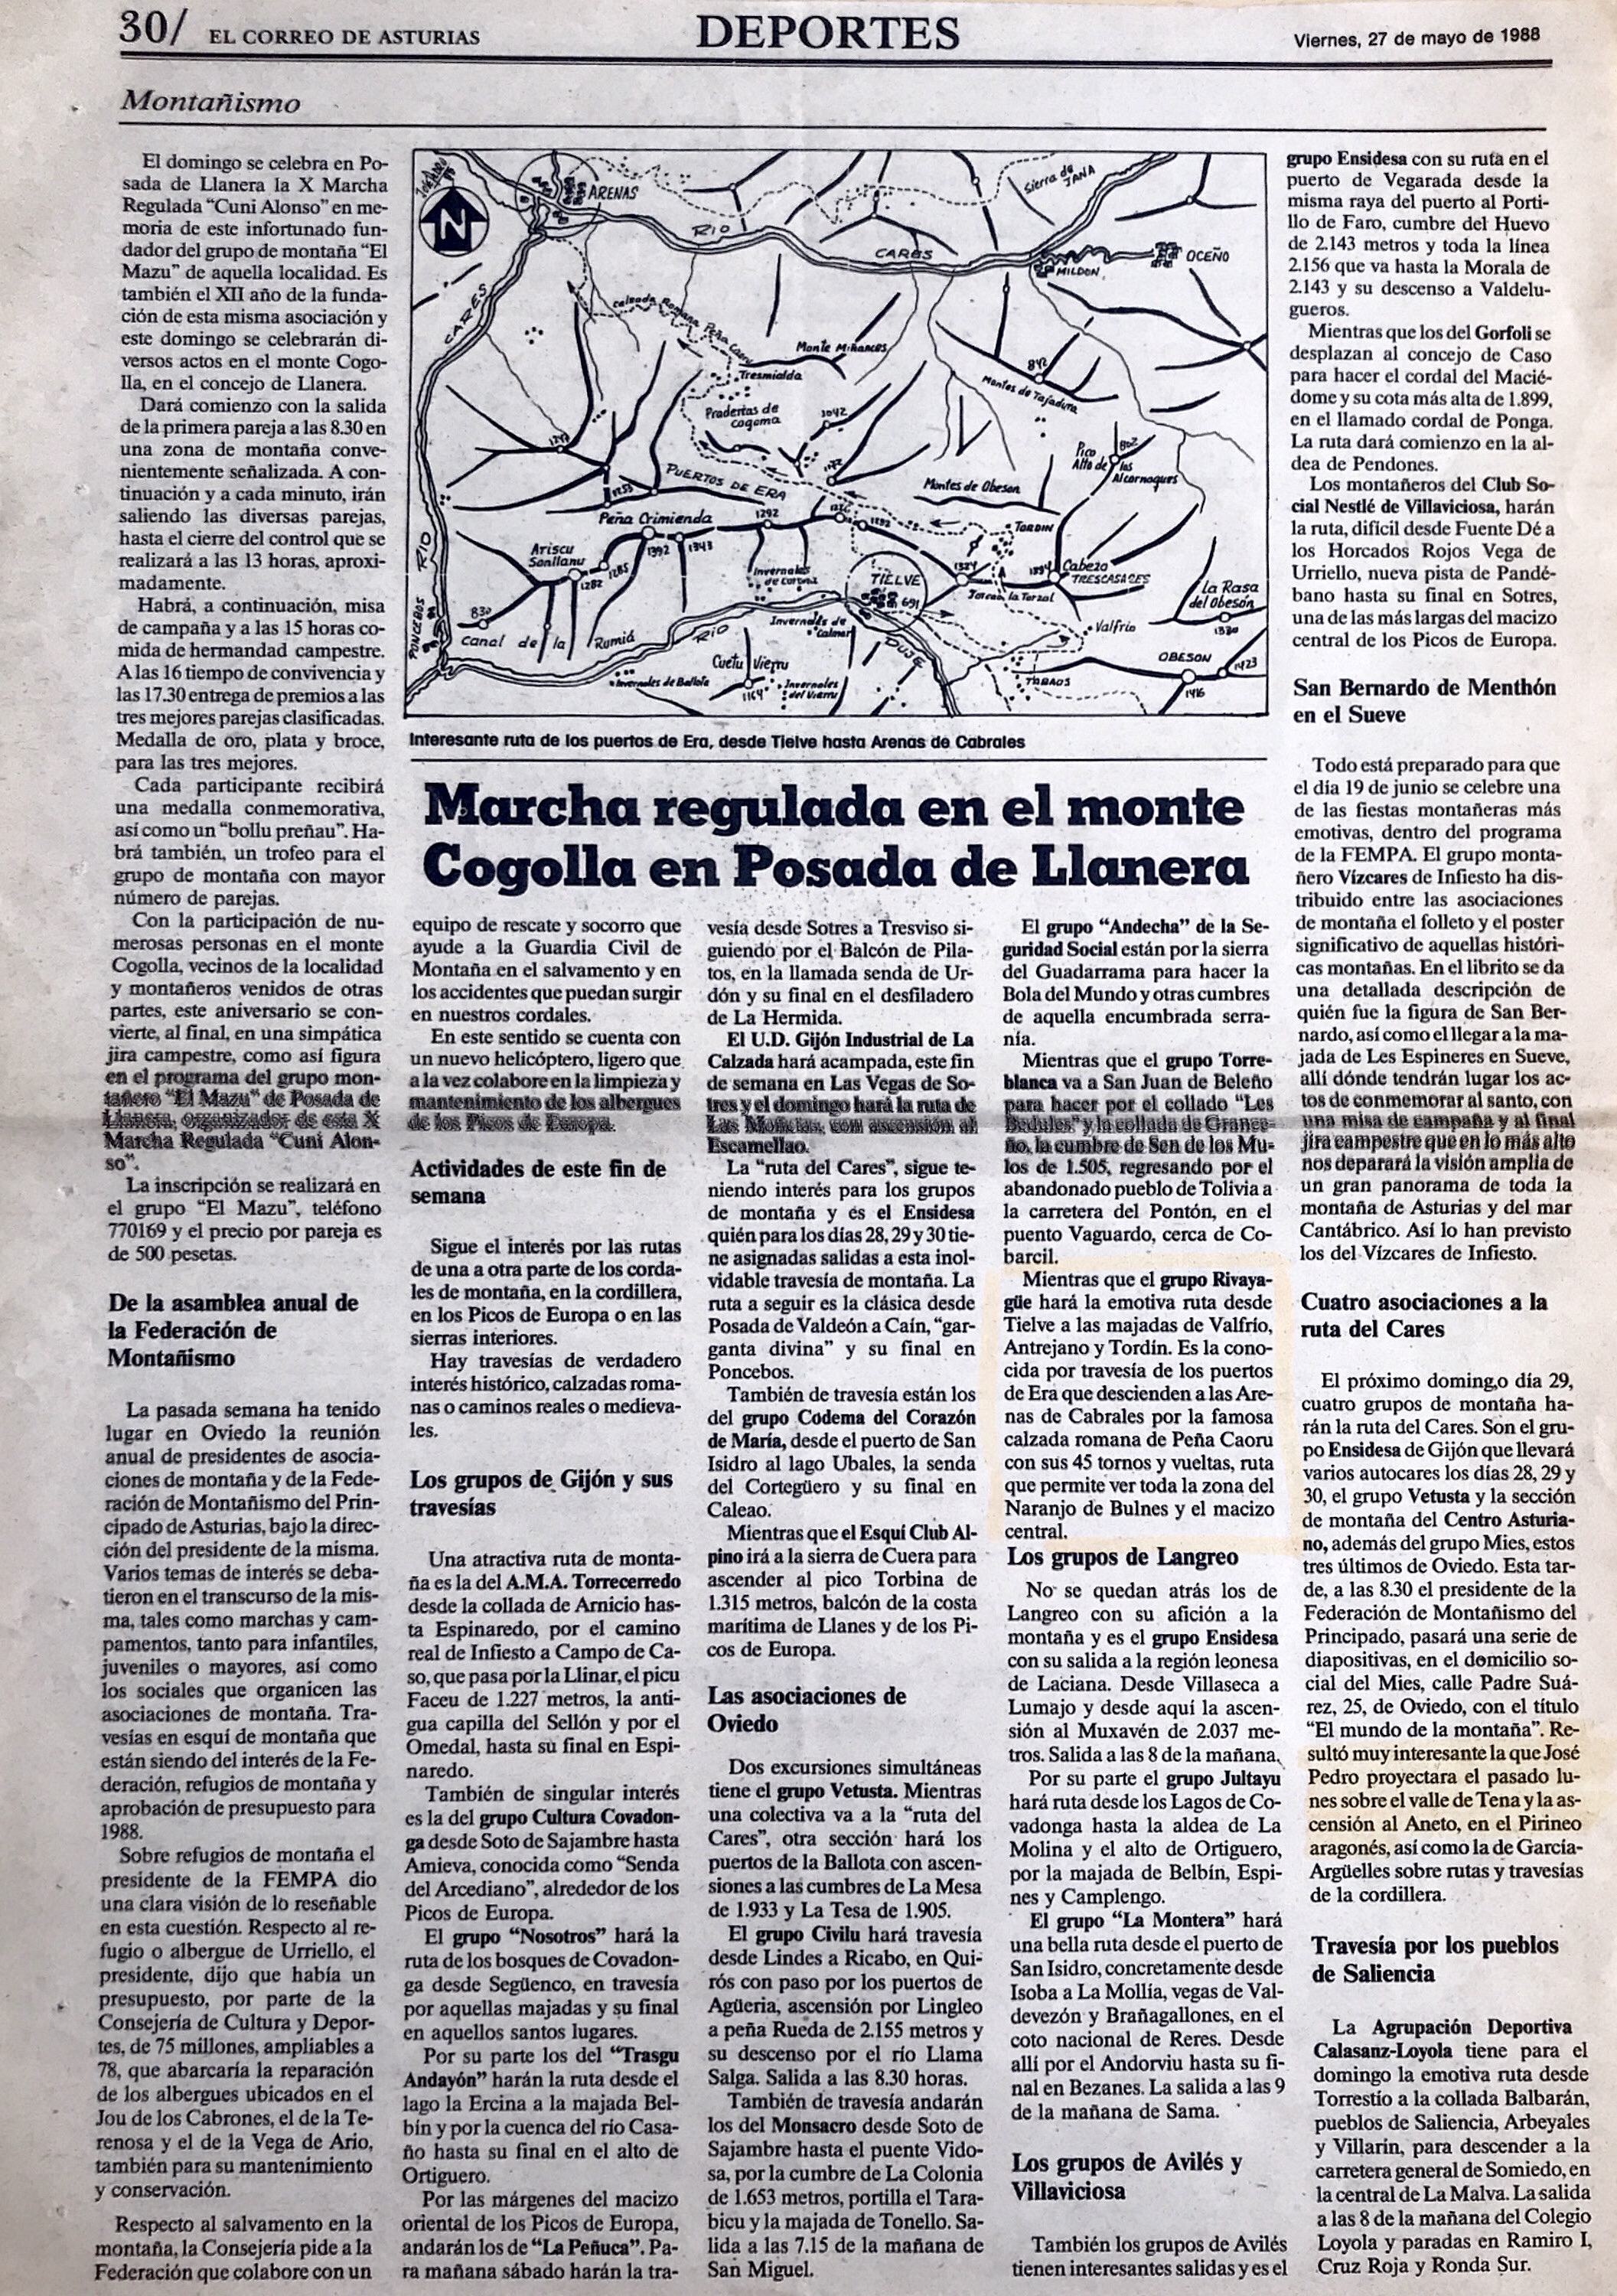 29 mayo, 1988: Travesía Tielve - Portudera - Arenas de Cabrales